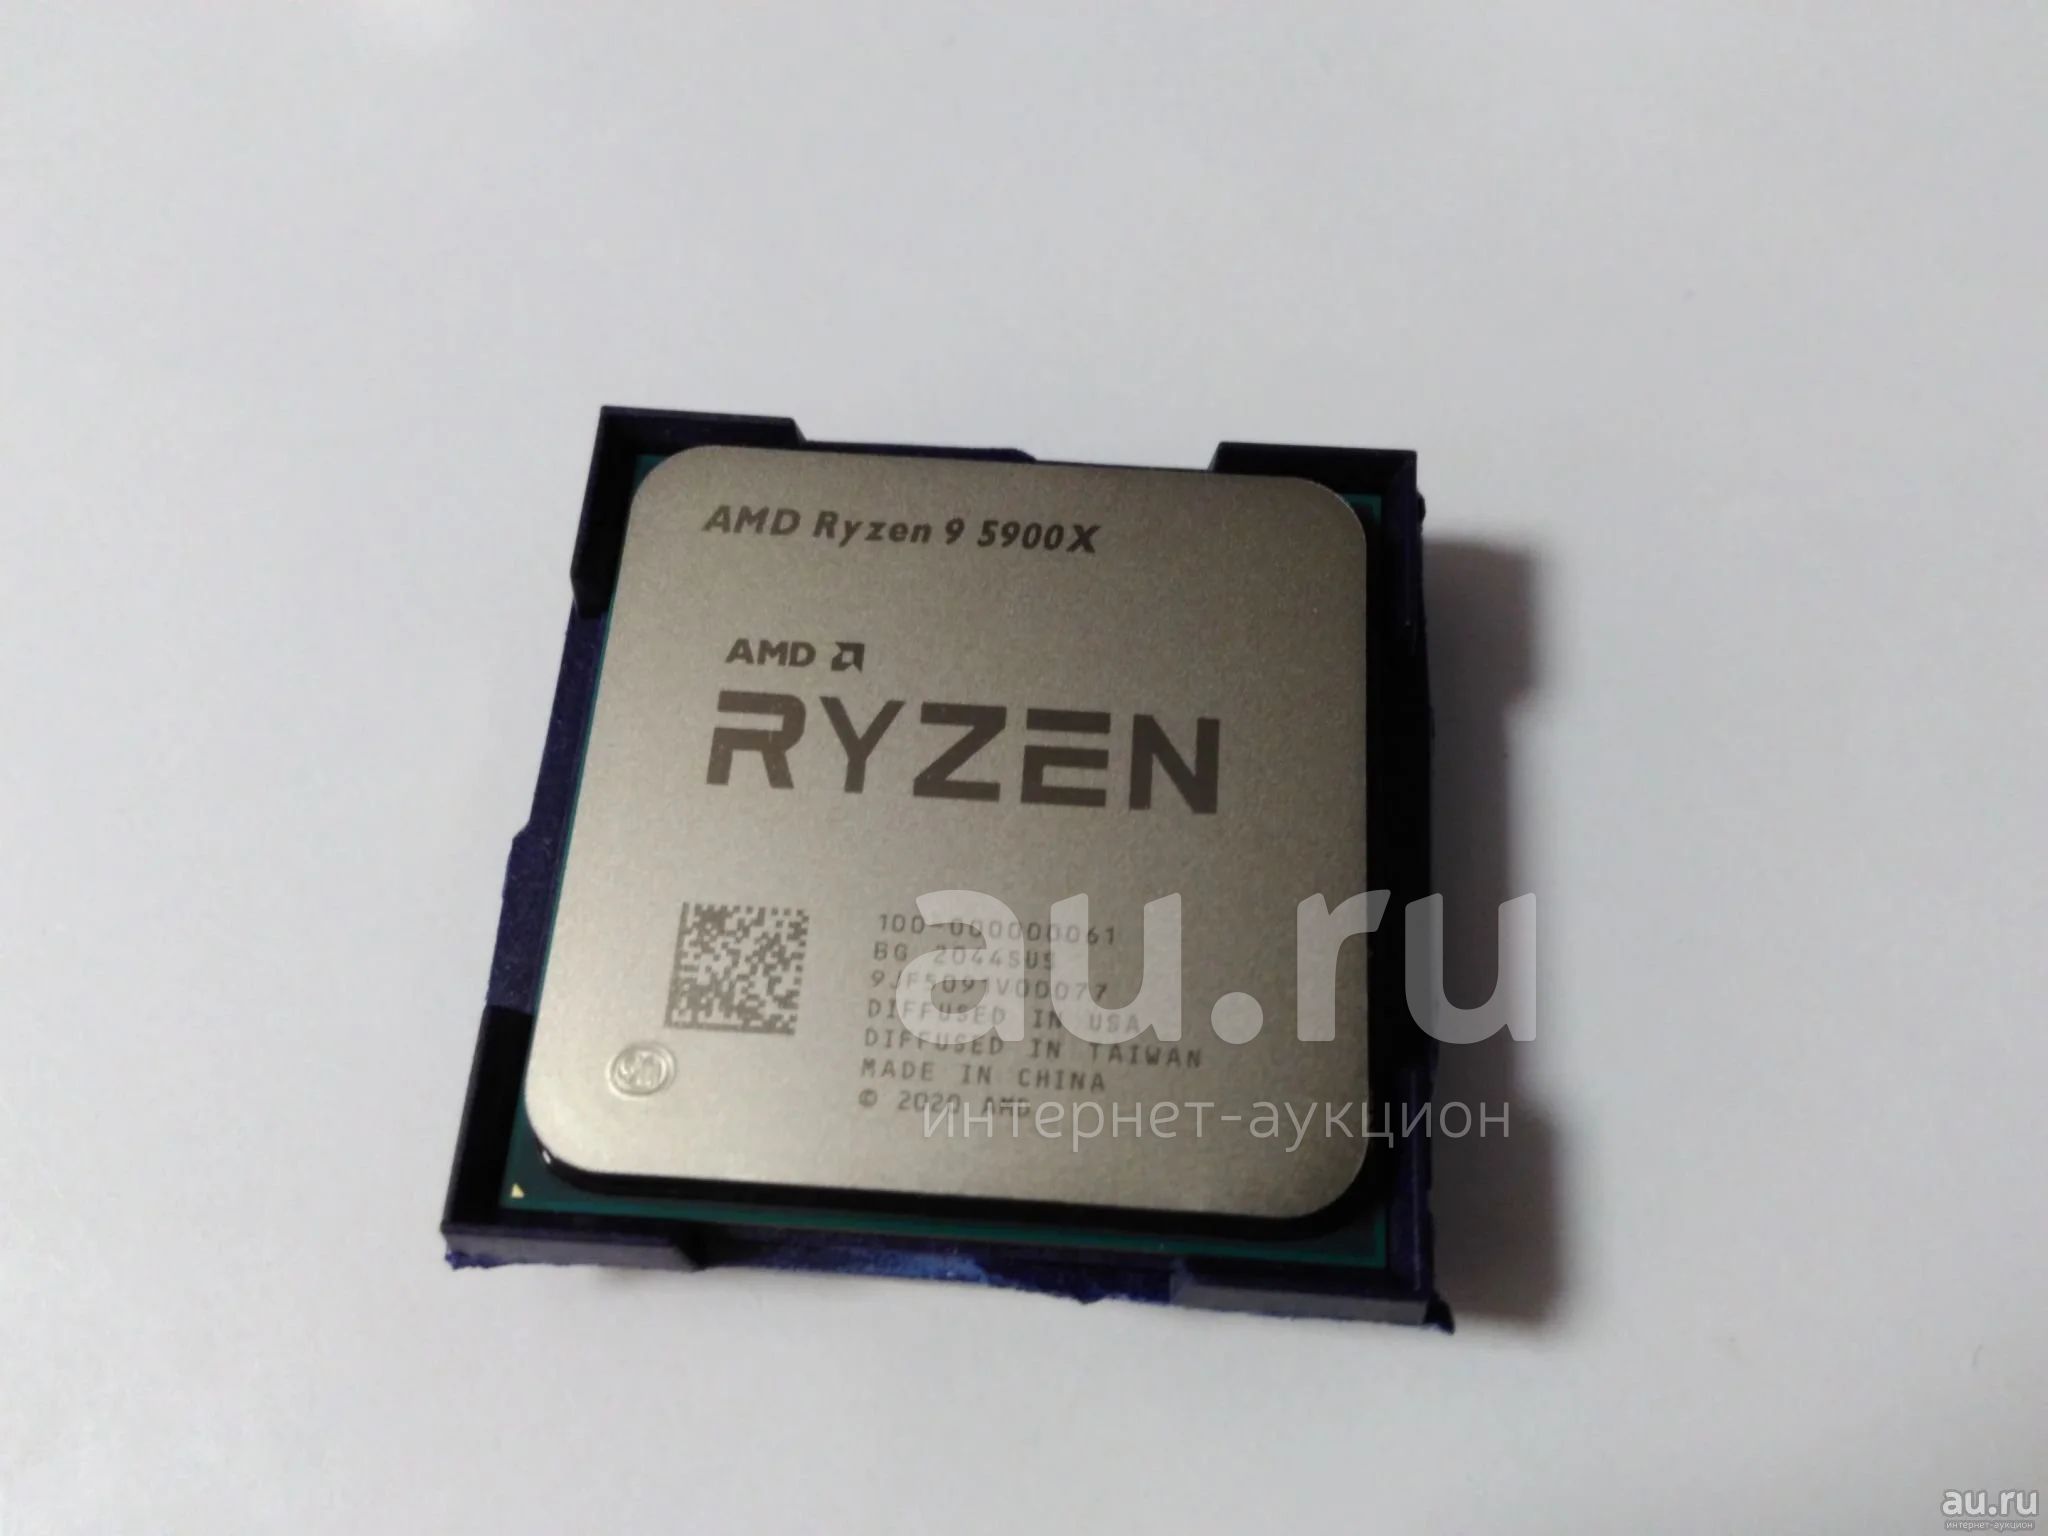 Amd ryzen 9 5900x oem. AMD 9 5900x. Процессор AMD Ryzen 9 5900x Box. Процессор AMD Ryzen 9 3900x. AMD Ryzen 9 5900x 12 Core.